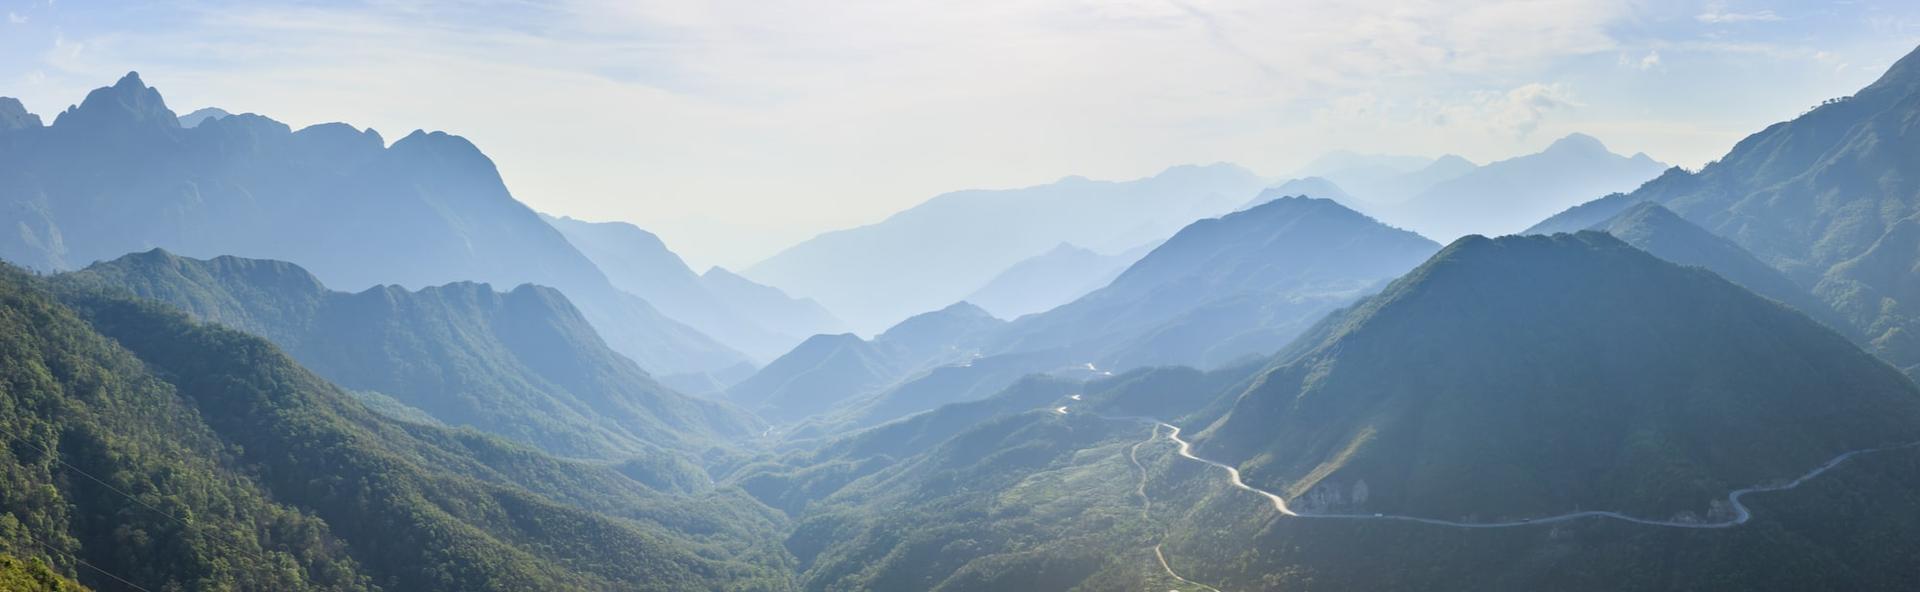 Lai Châu đẹp đến mức nào? Mời bạn xem hình ảnh thú vị liên quan đến Lai Châu để khám phá vẻ đẹp của núi rừng Tây Bắc Việt Nam.